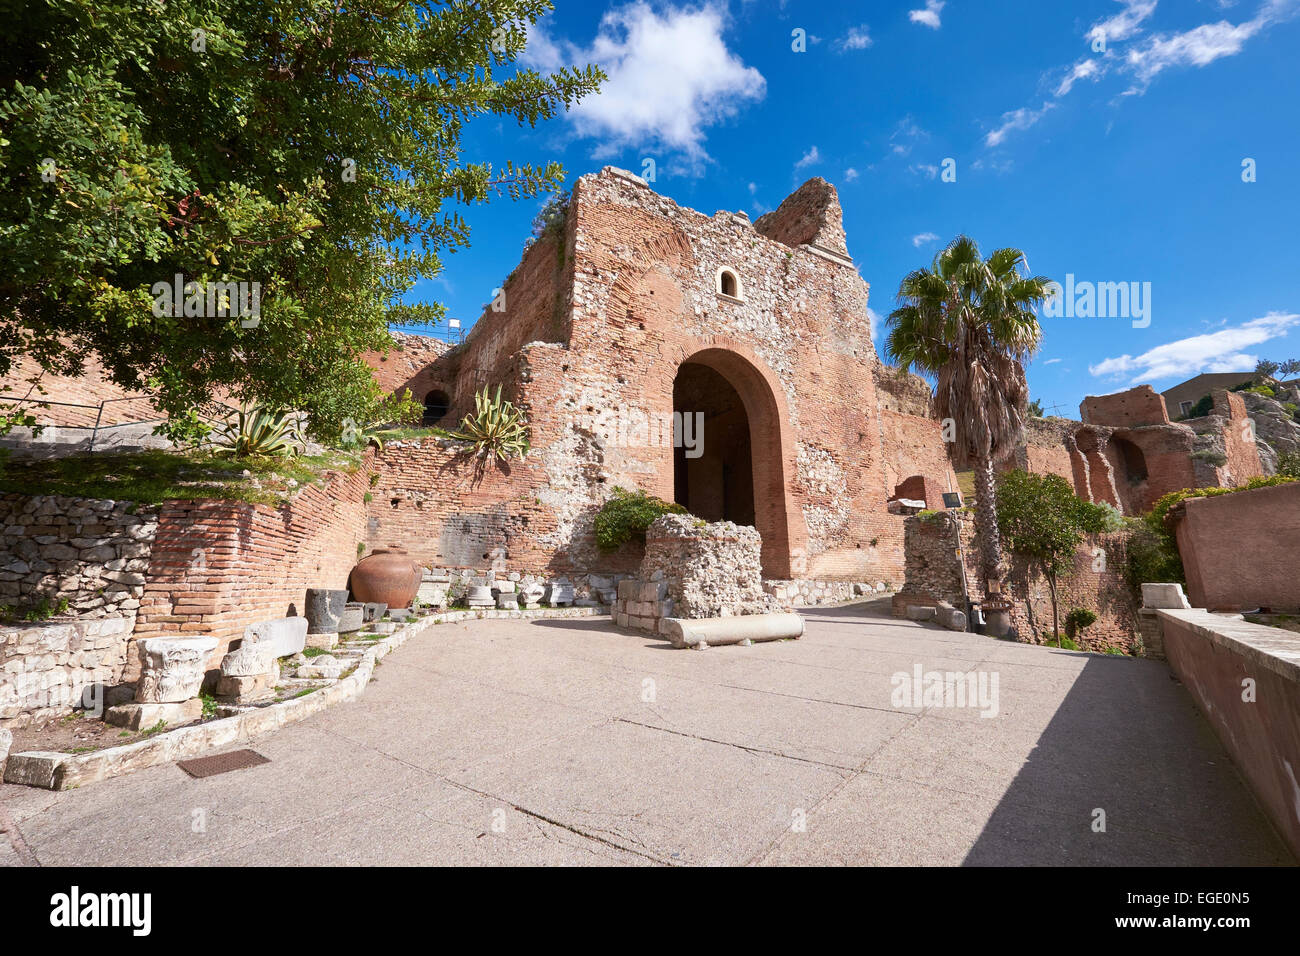 Taormina Amphitheater, Sizilien, Italien. Italienischen Tourismus, Reise- und Urlaubsziel. Stockfoto